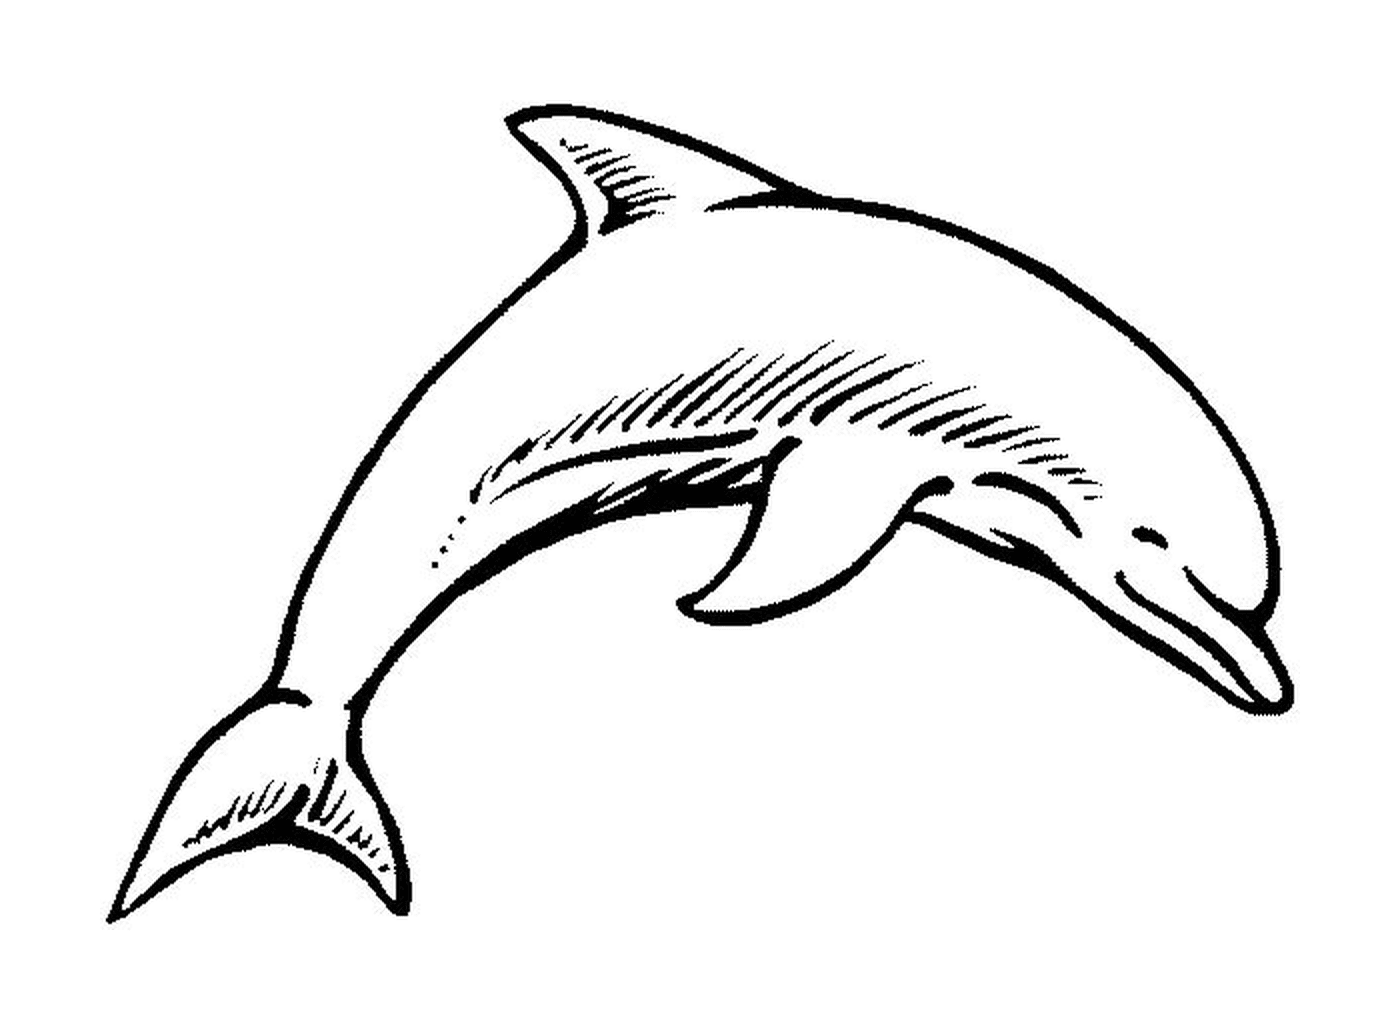  Un delfín 